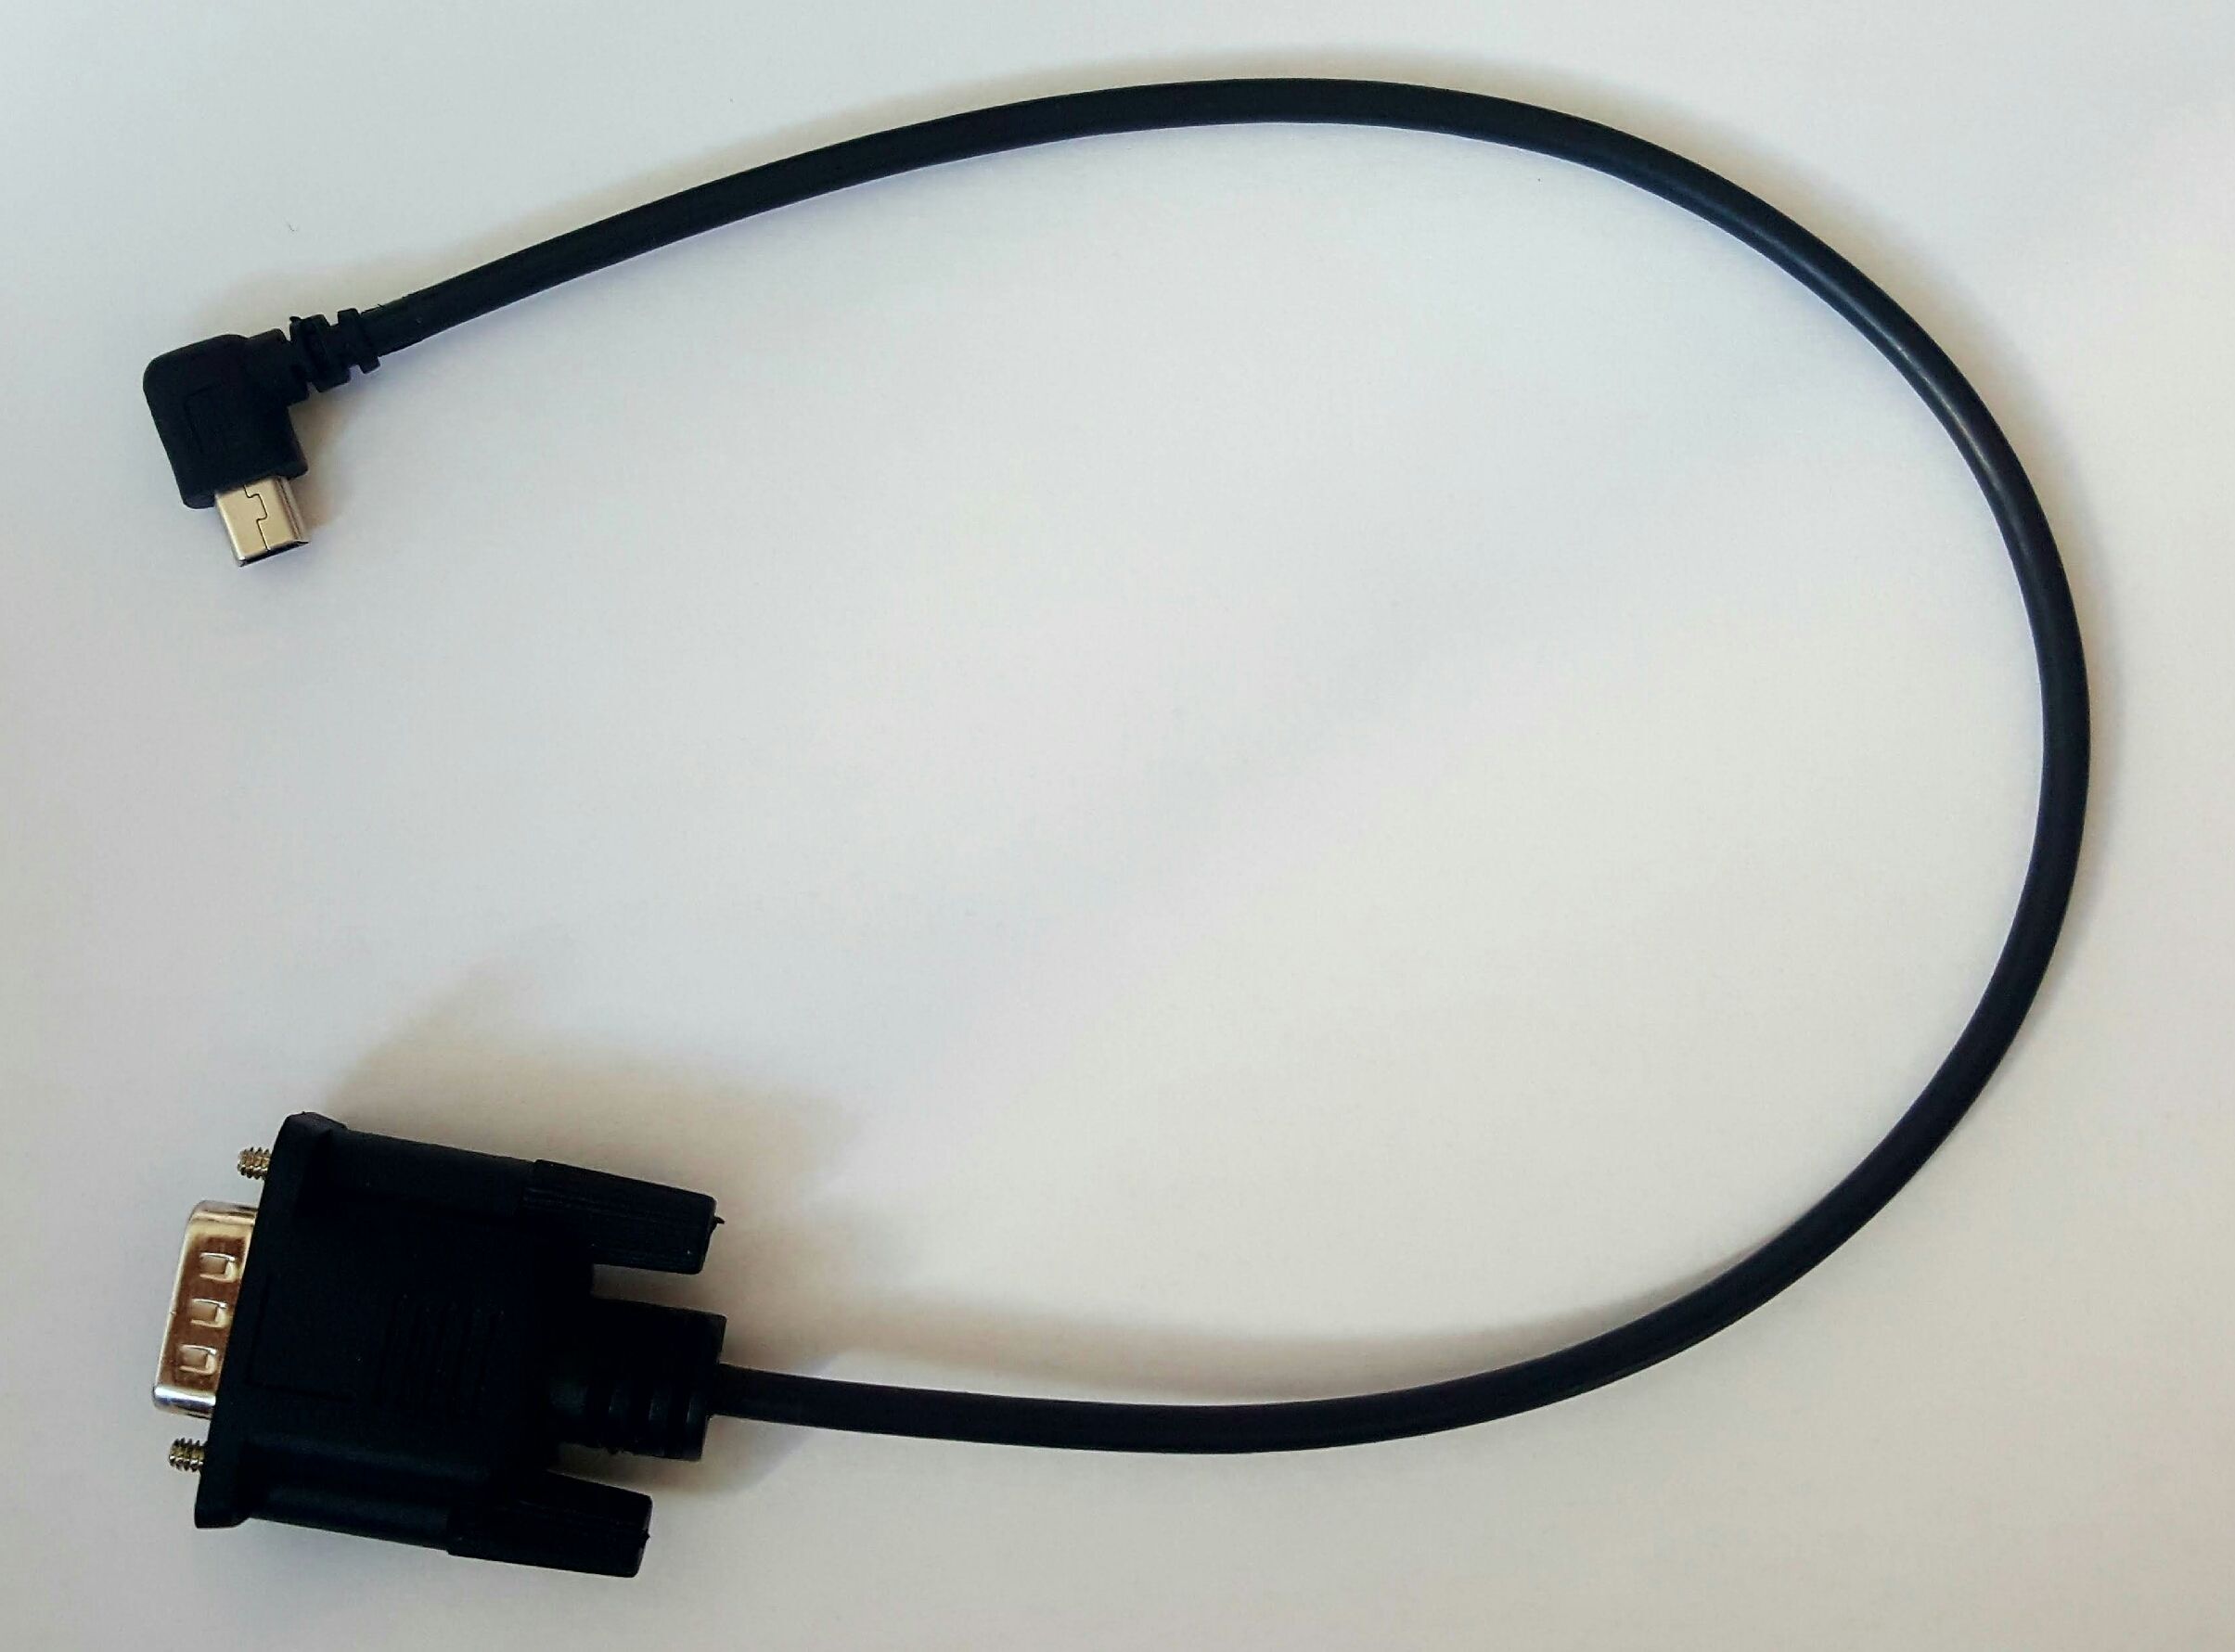 EMMHUB3 MINI USB Cable